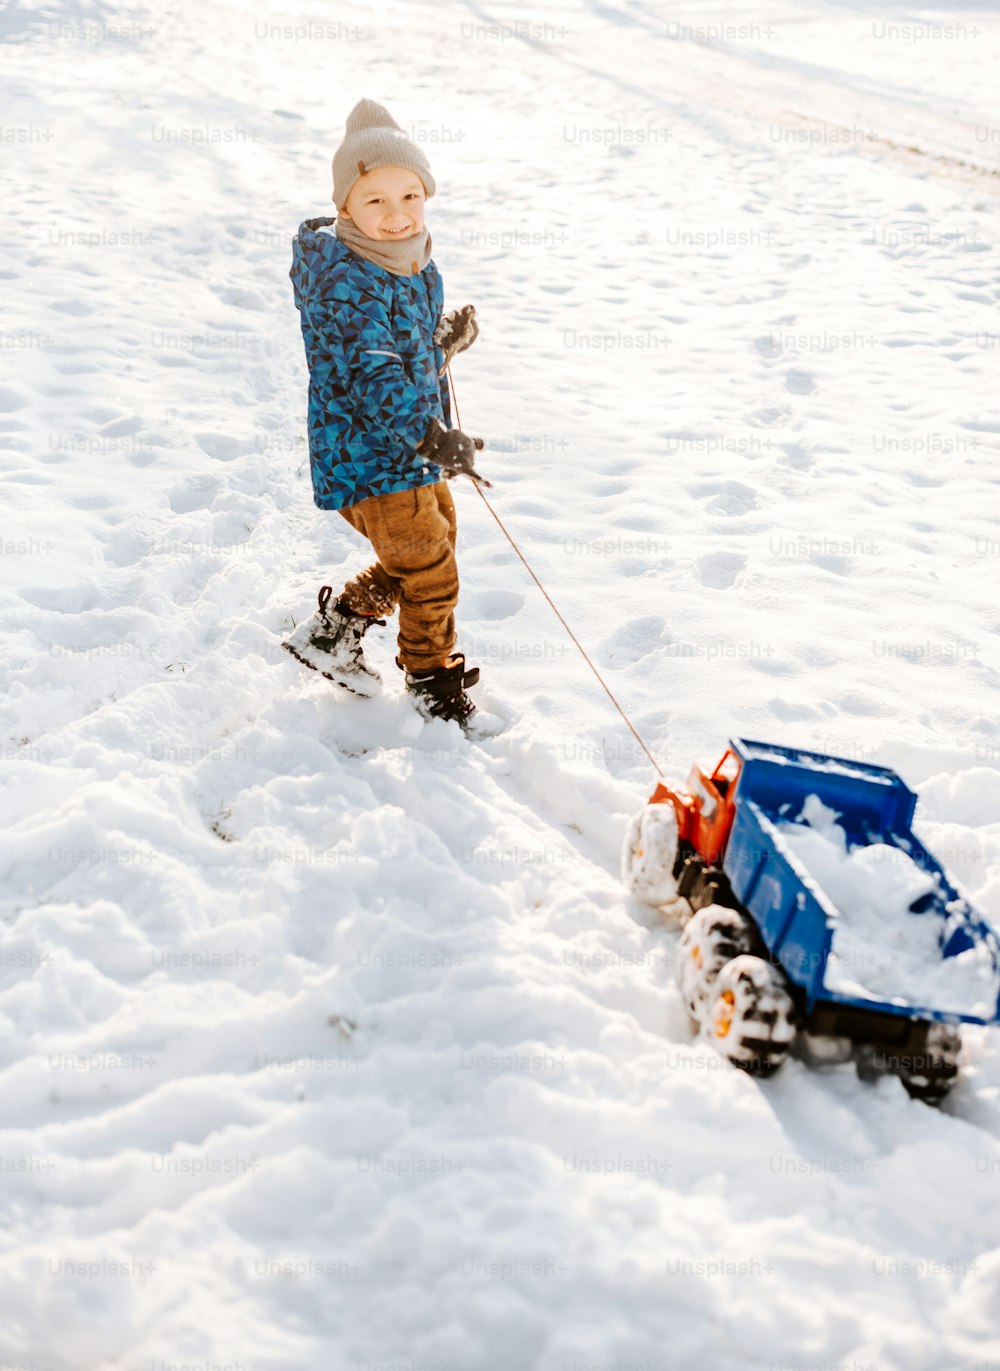 Un jeune garçon tirant une petite voiture dans la neige